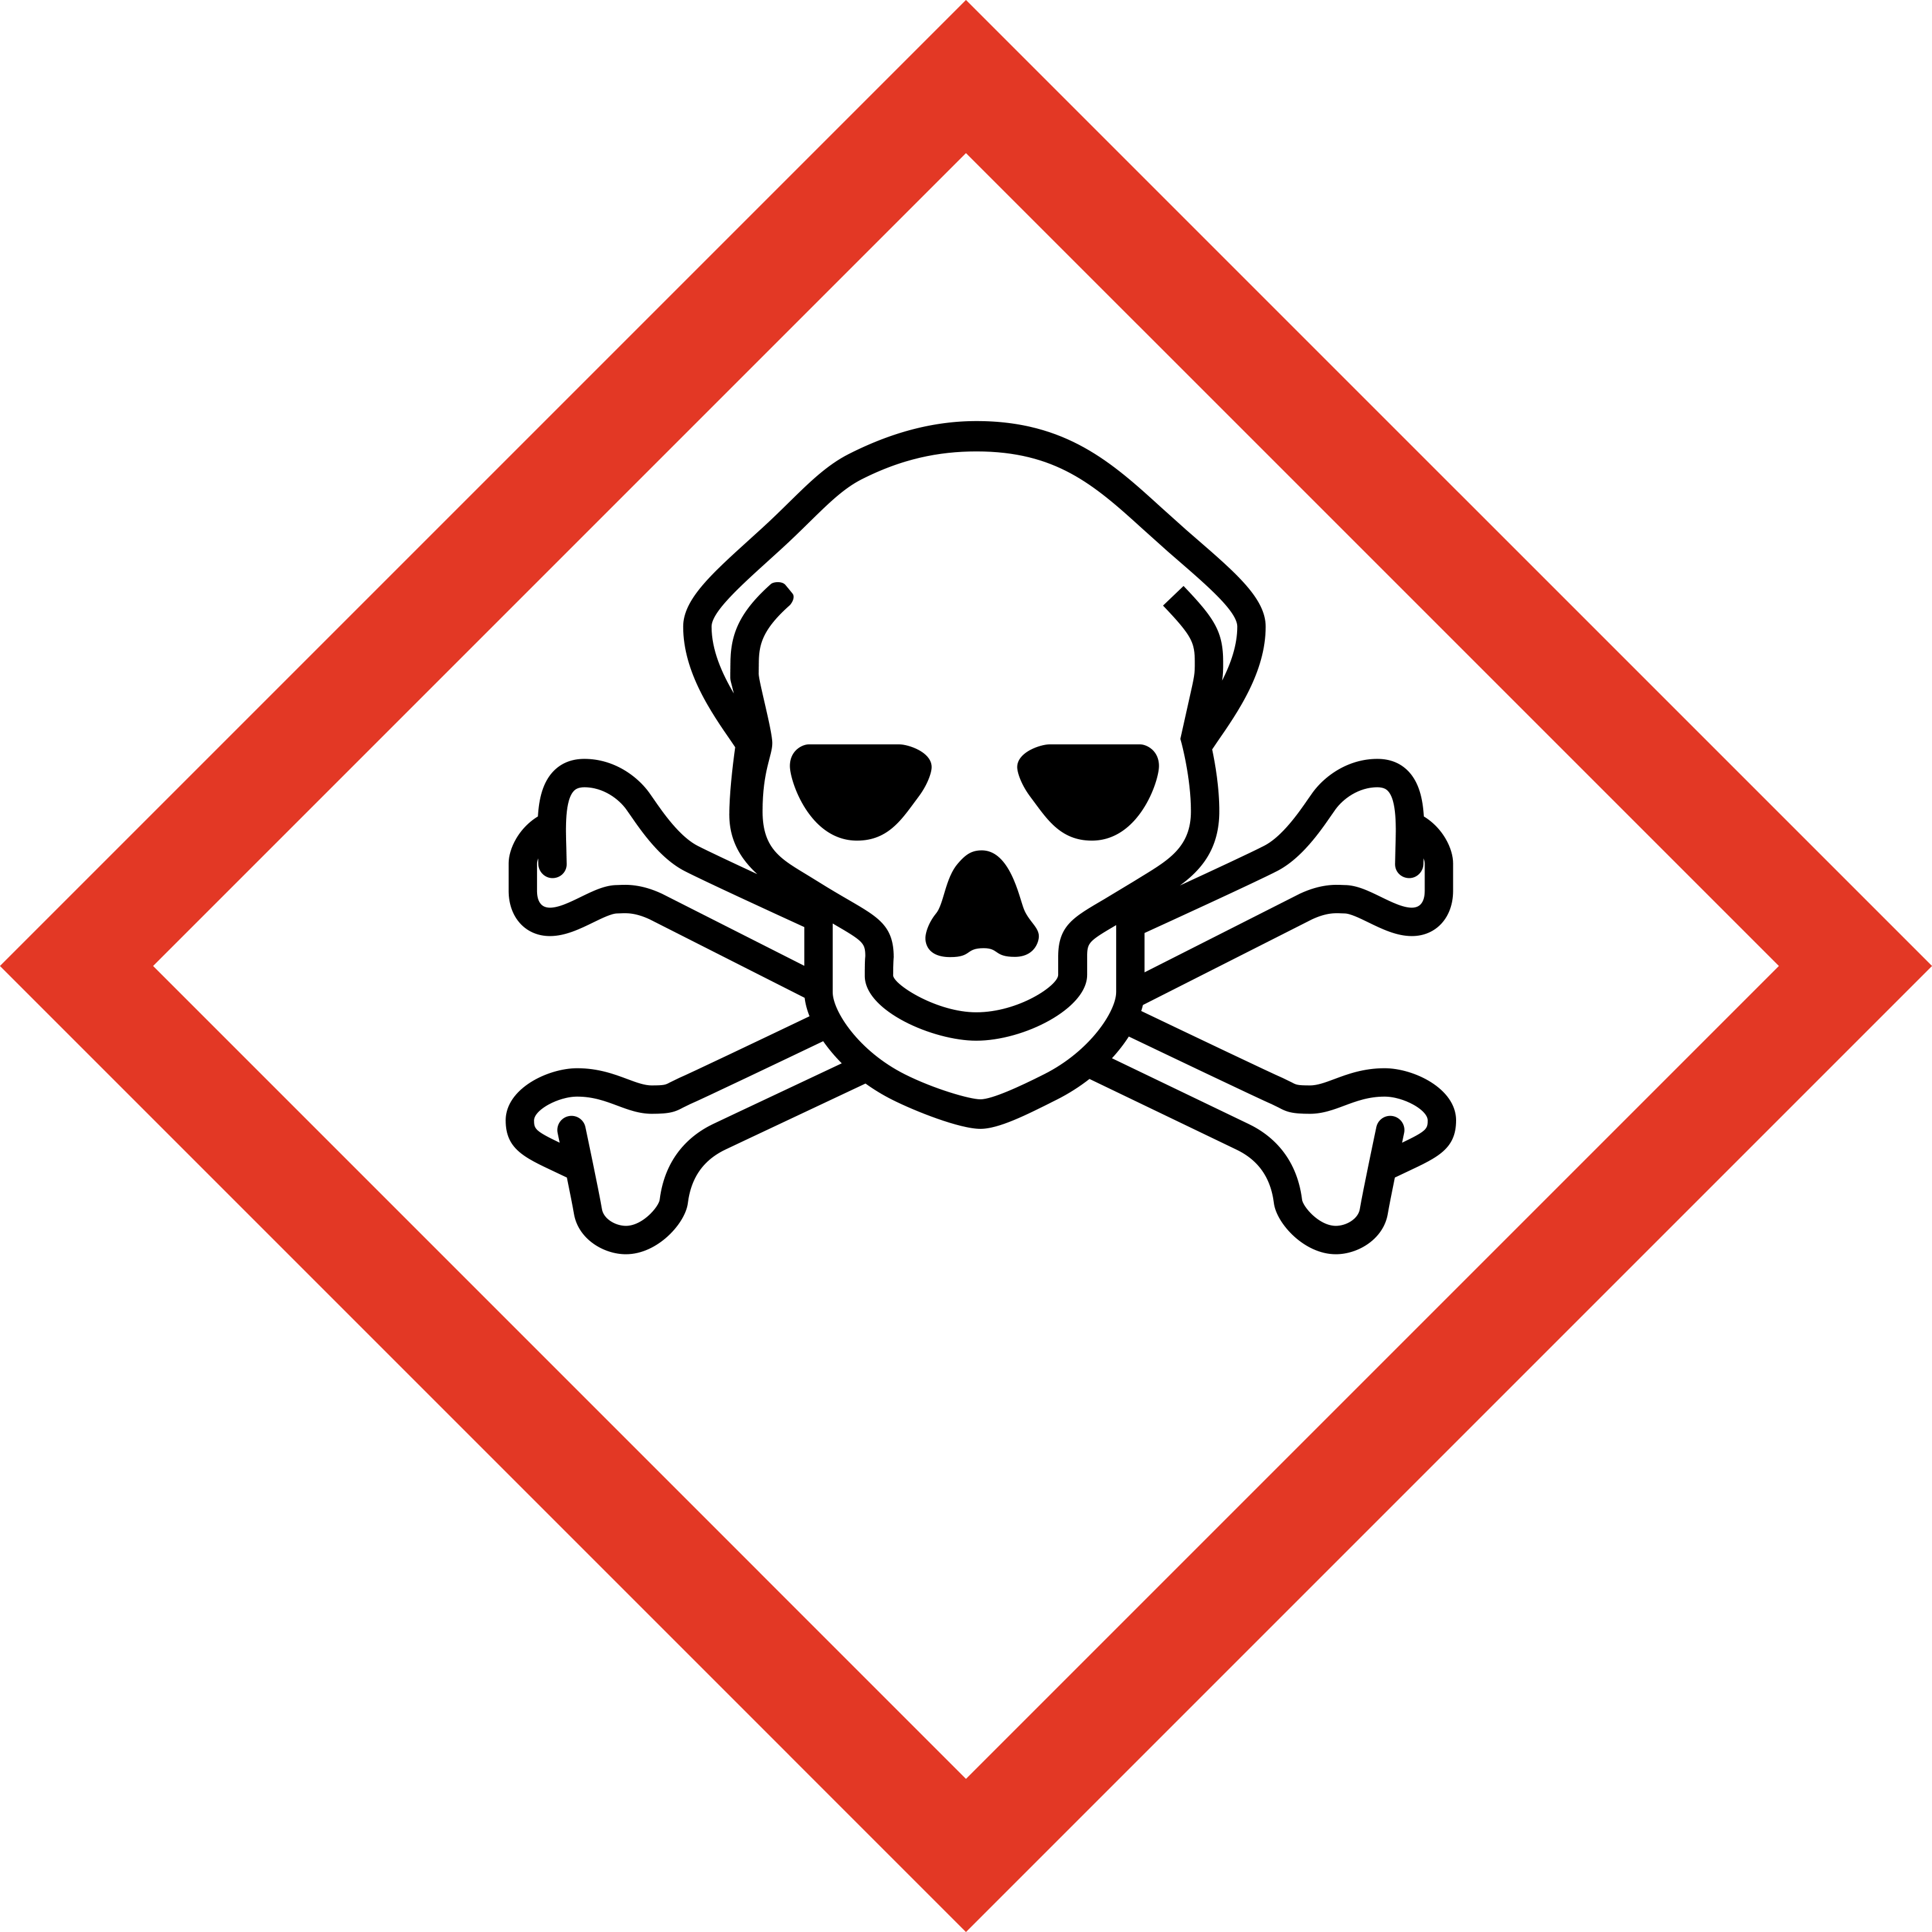 Pictogramme danger, substance toxique